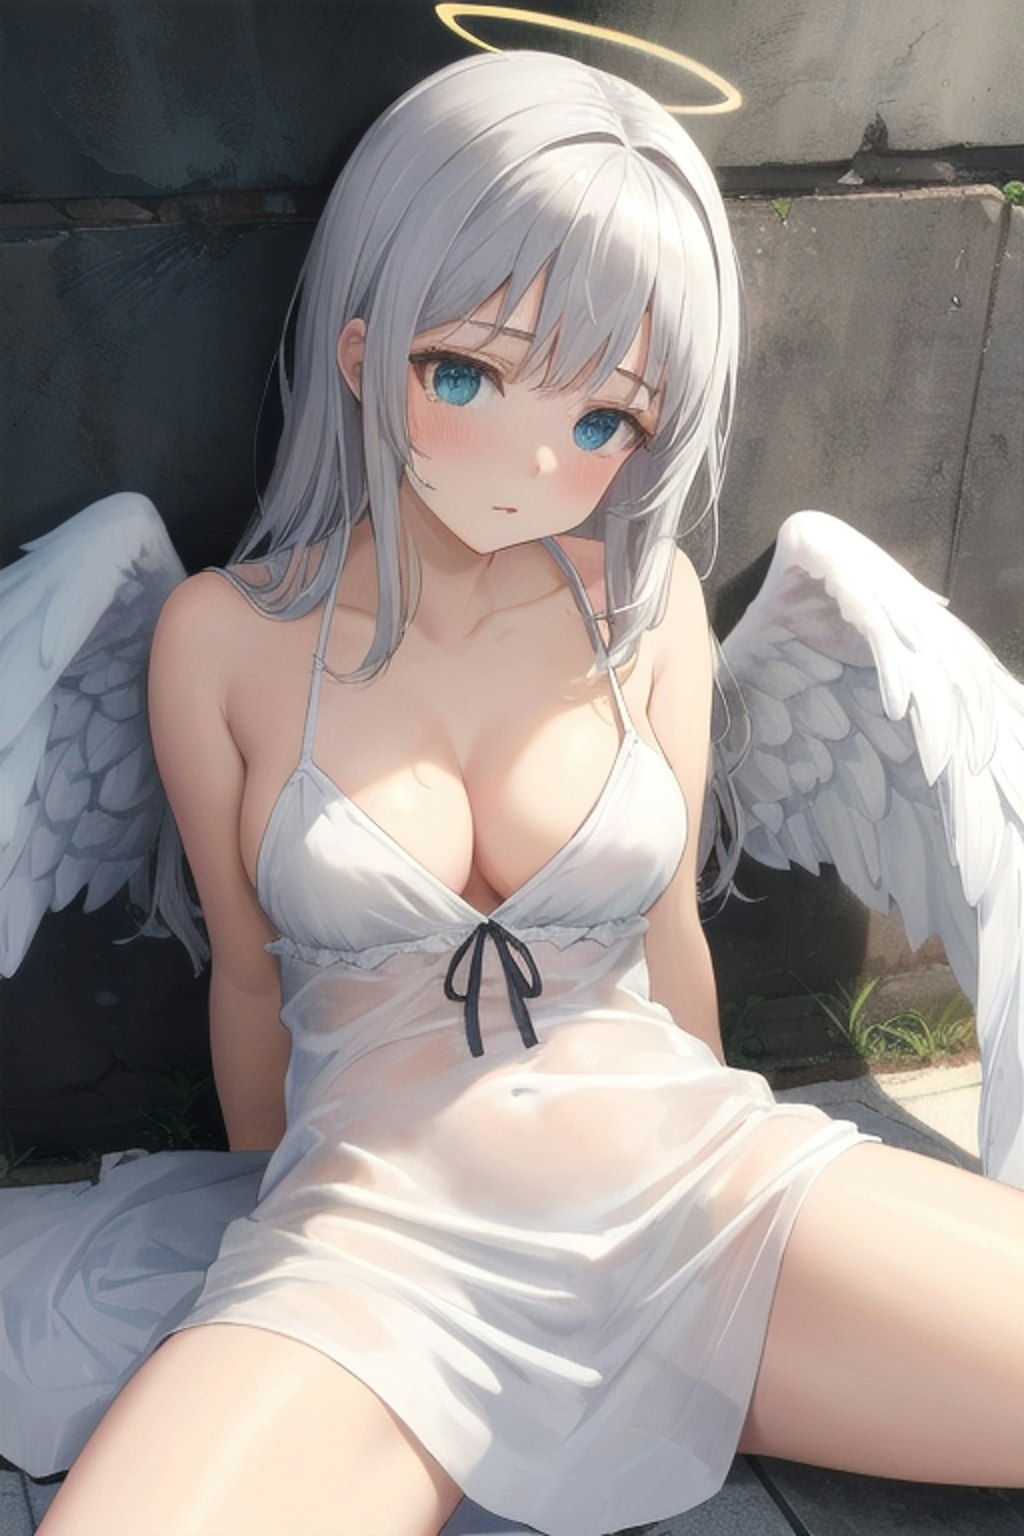 天使0629a